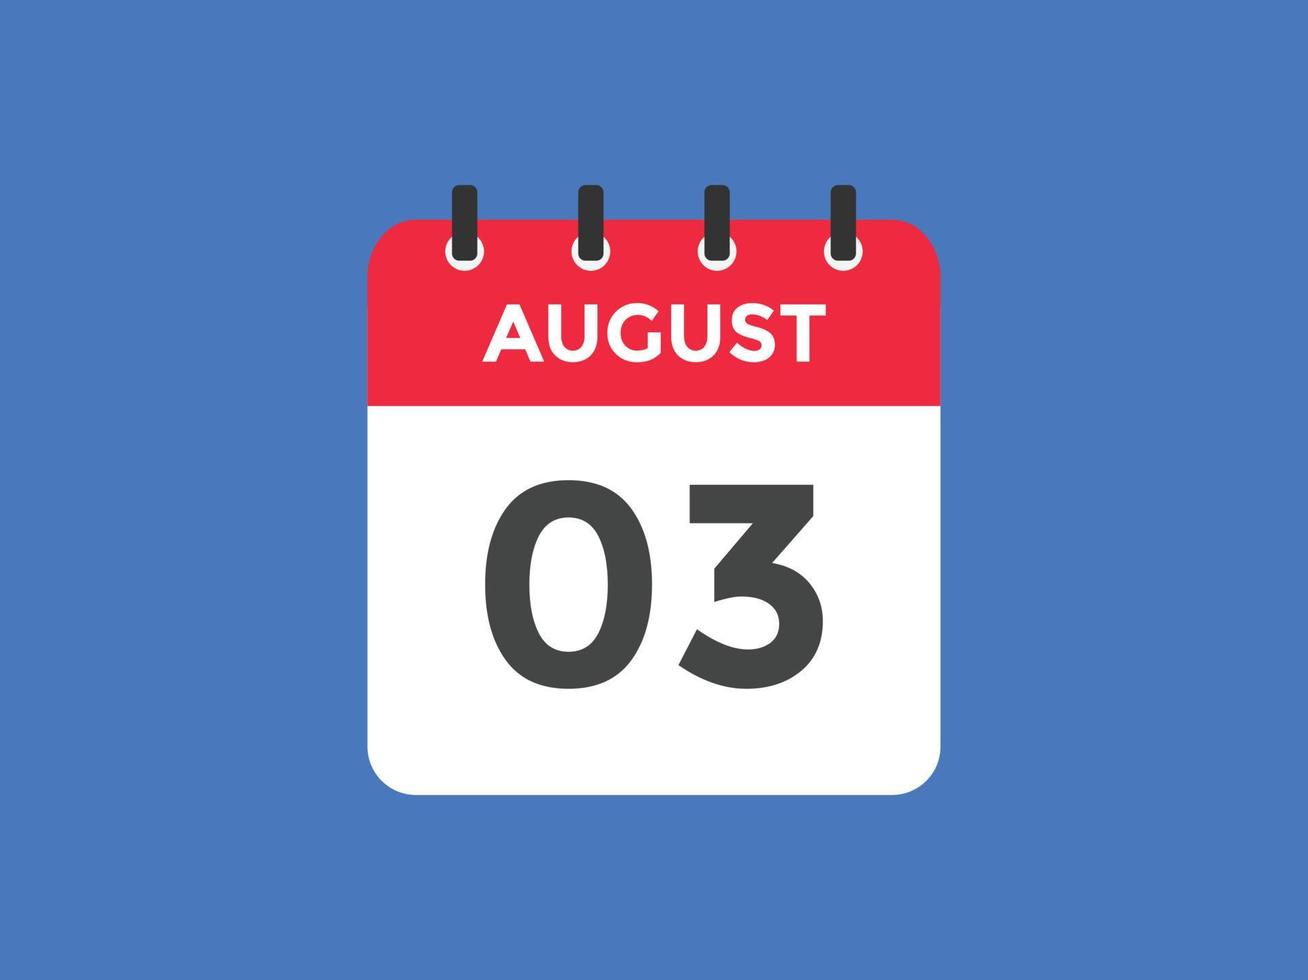 lembrete de calendário de 3 de agosto. Modelo de ícone de calendário diário de 3 de agosto. calendário 3 de agosto modelo de design de ícone. ilustração vetorial vetor